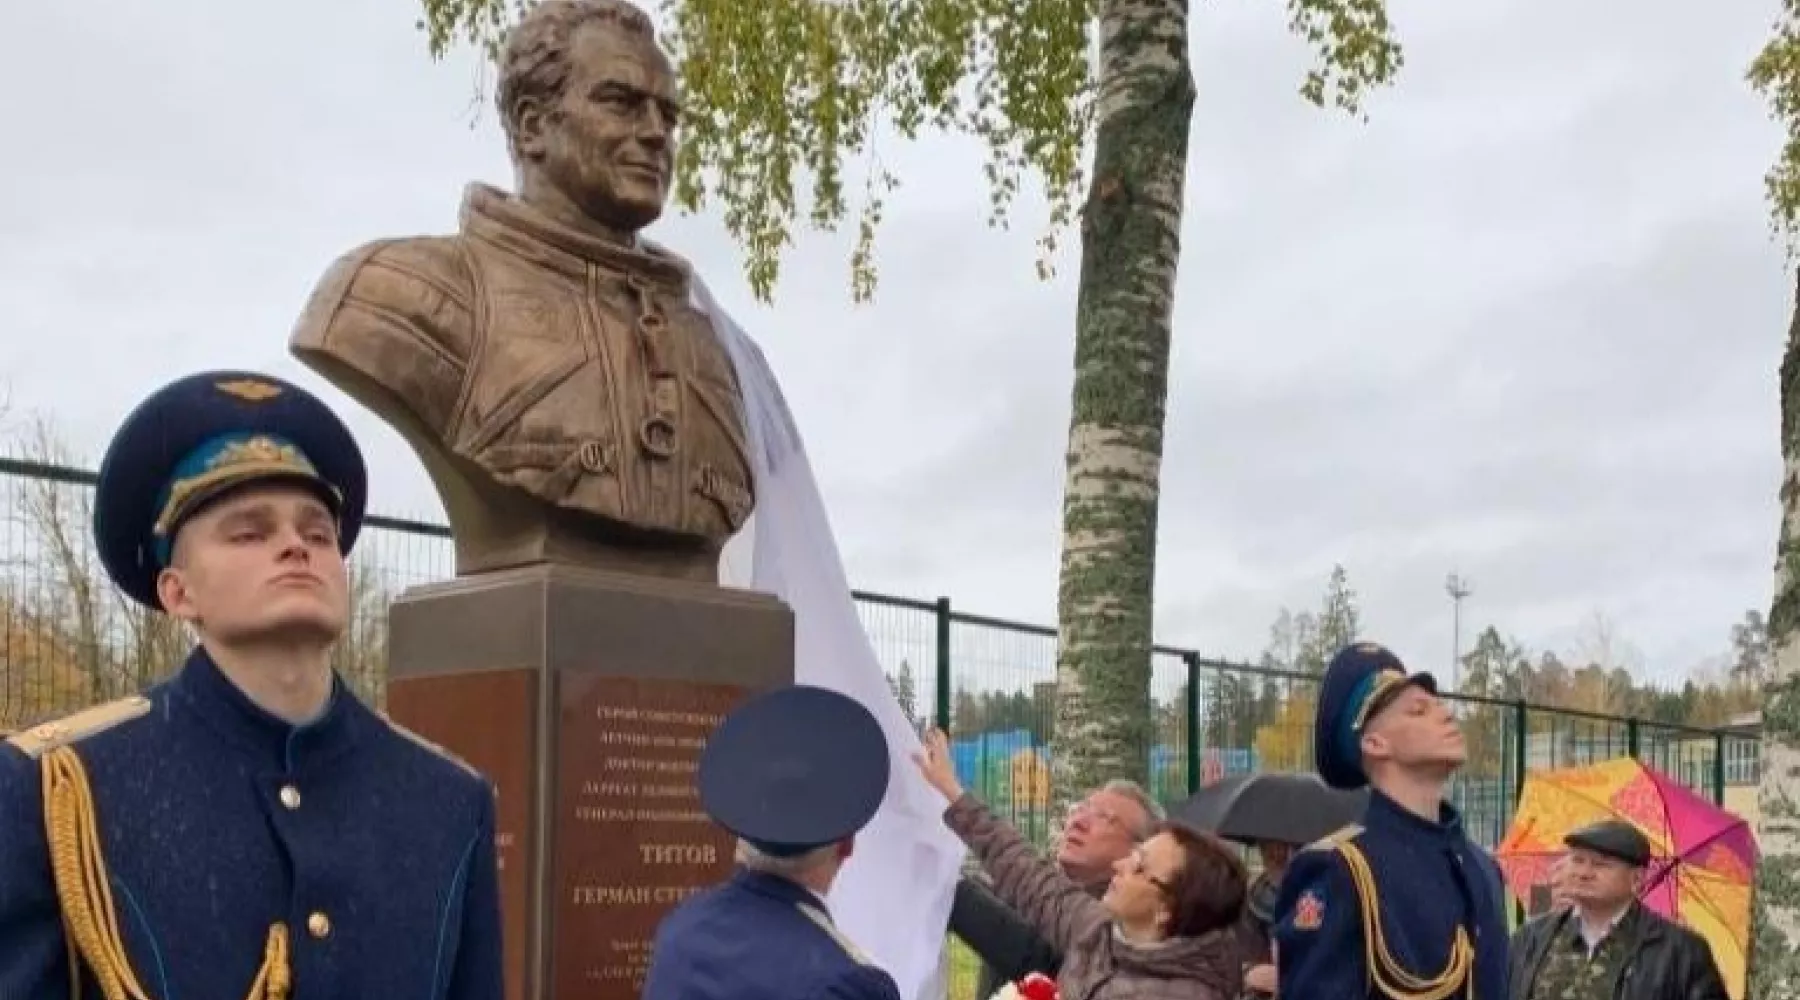 Памятник Герману Титову открыли в Ленинградской области